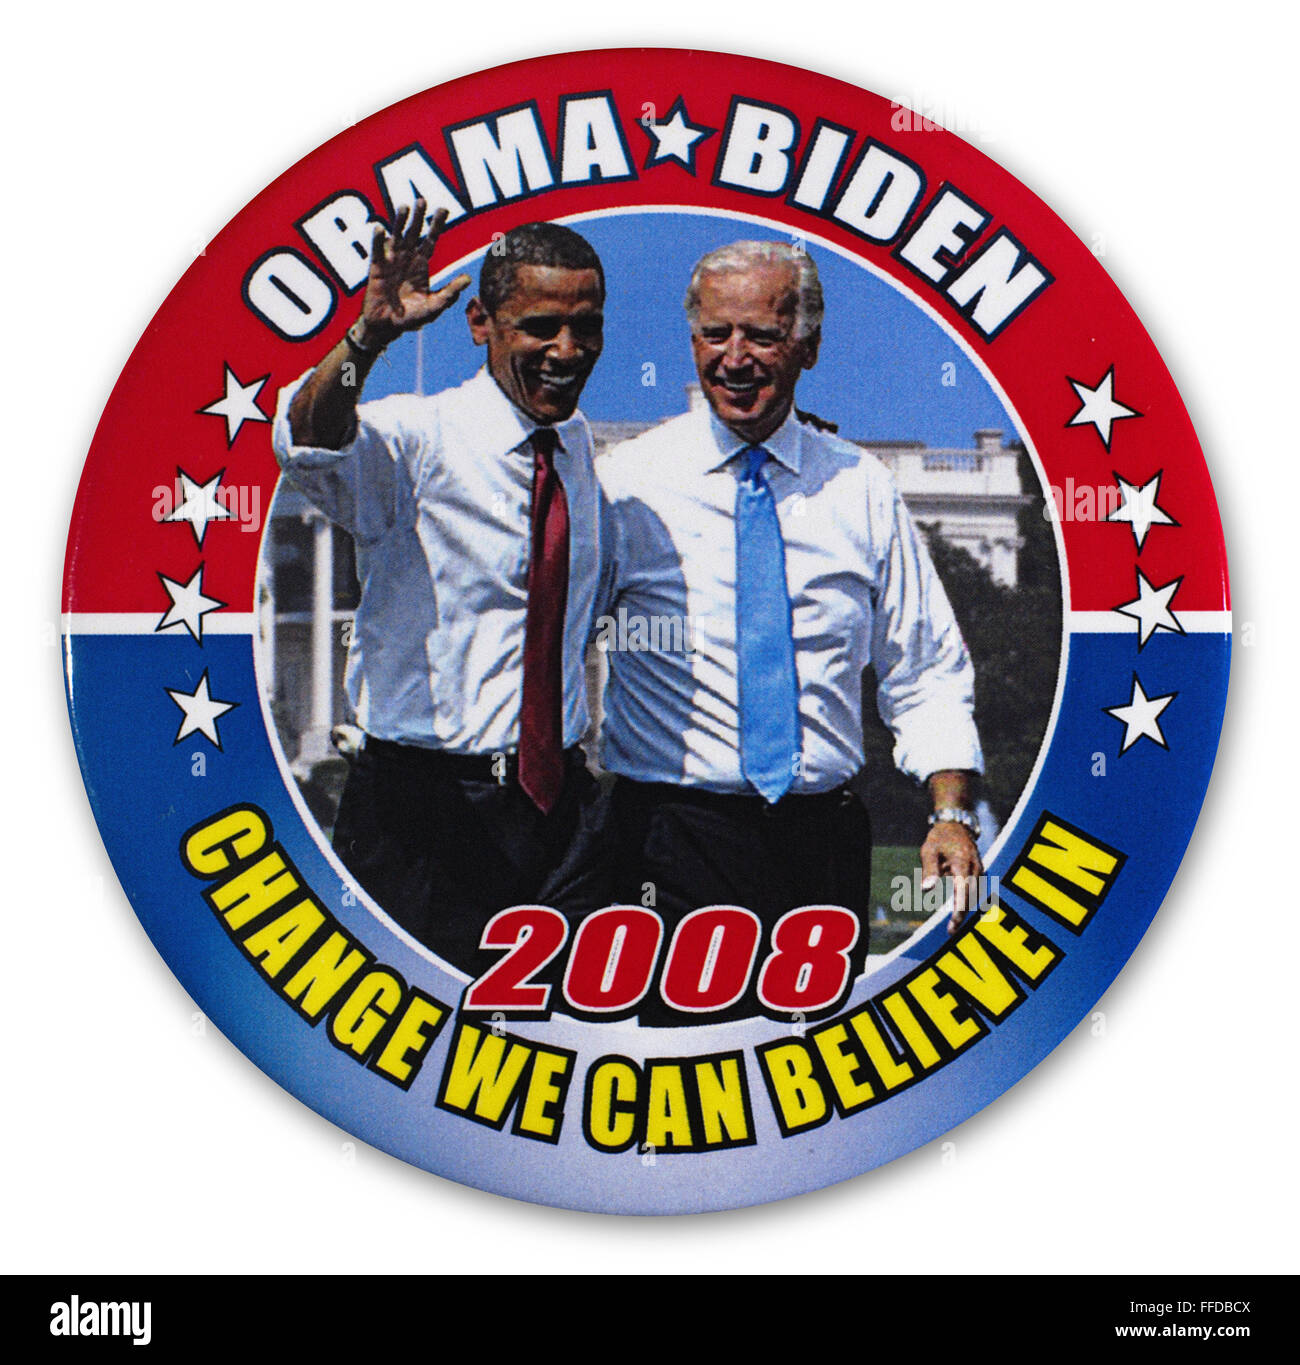 PRÄSIDENTSCHAFTSWAHLKAMPF 2008. /nCampaign Taste für demokratischen Präsidenten und Vize-Präsidentschaftskandidaten Barack Obama (links) und Joseph Biden, 2008. Stockfoto